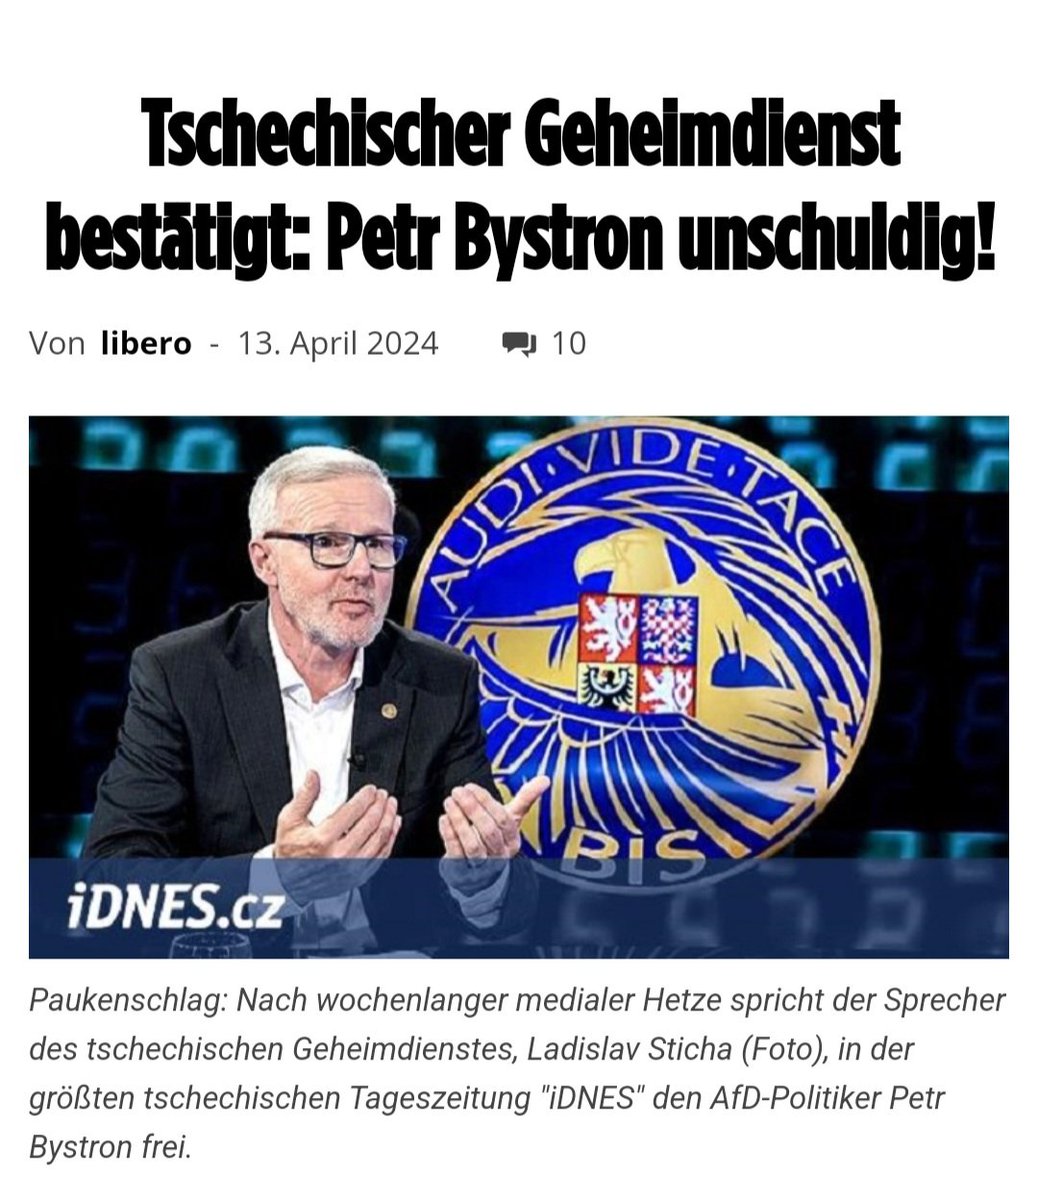 Laut Bericht der größten tschechischen Tageszeitung wurde der Name Petr #Bystron vom Geheimdienst NICHT genannt.
Es sieht also danach aus, dass es sich - ähnlich wie bei #Correctiv - lediglich um eine weitere Verleumdungskampagne gegen die #AfD handelt. 🤨
pi-news.net/2024/04/tschec…